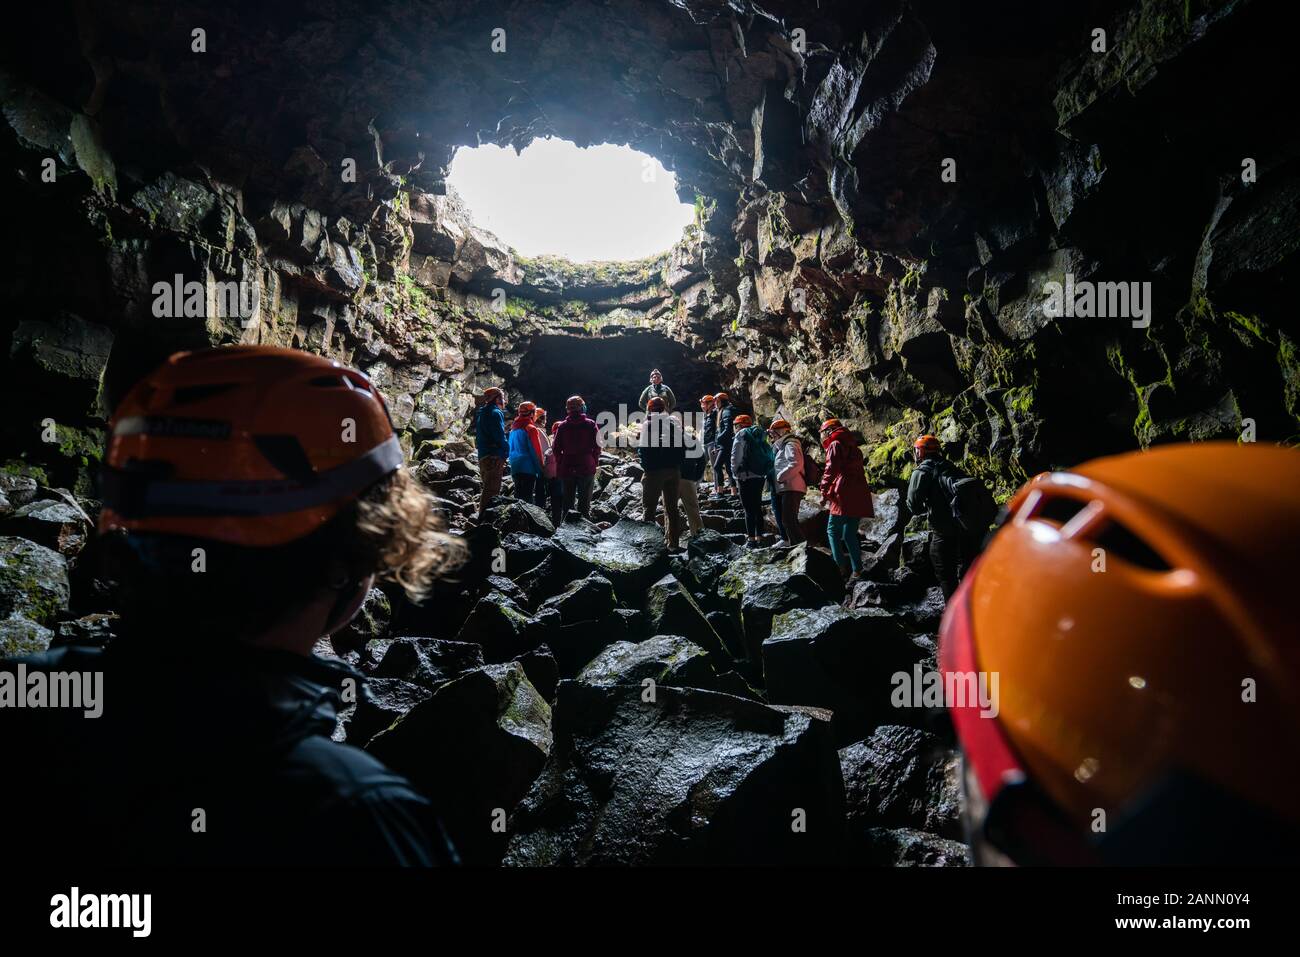 Porlakshafnarvegur, Islande - Juillet 3, 2018 : Groupe de personnes et les touristes d'explorer la grotte du tunnel de lave de Raufarholshellir en Islande. La grotte était naturellement Banque D'Images